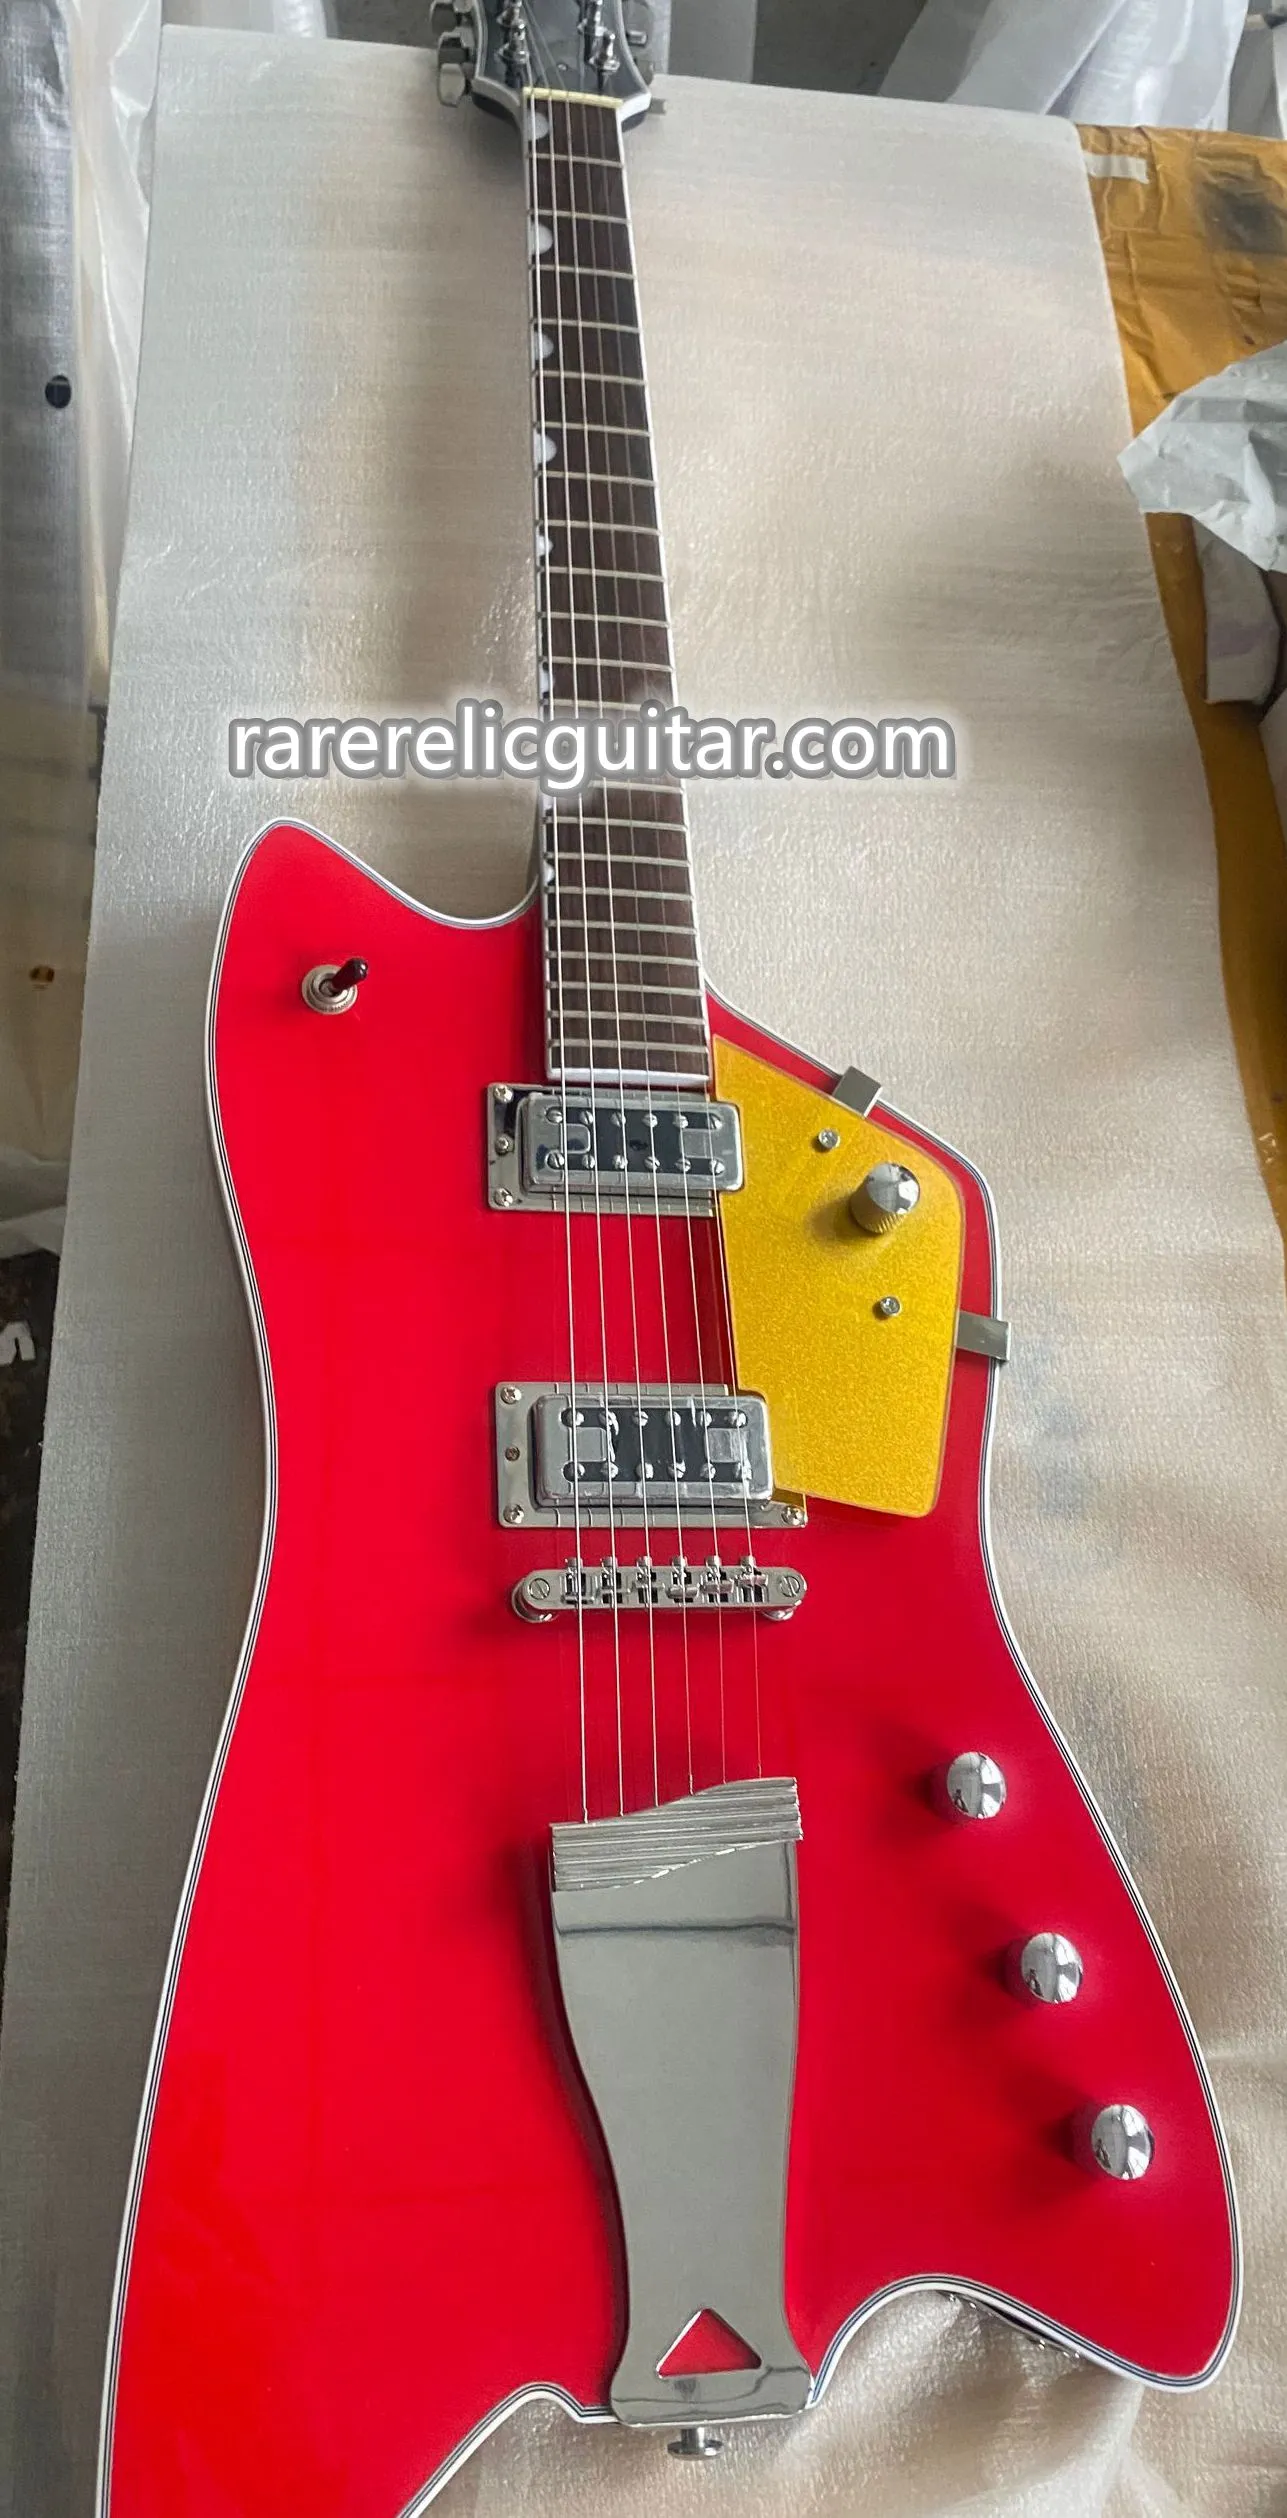 En stock 6199 Billy Bo Jupiter Thunderbird Guitare électrique rouge Touche en palissandre Incrustation de vignette Ventre Coupé Contour Corps en acajou Matériel chromé